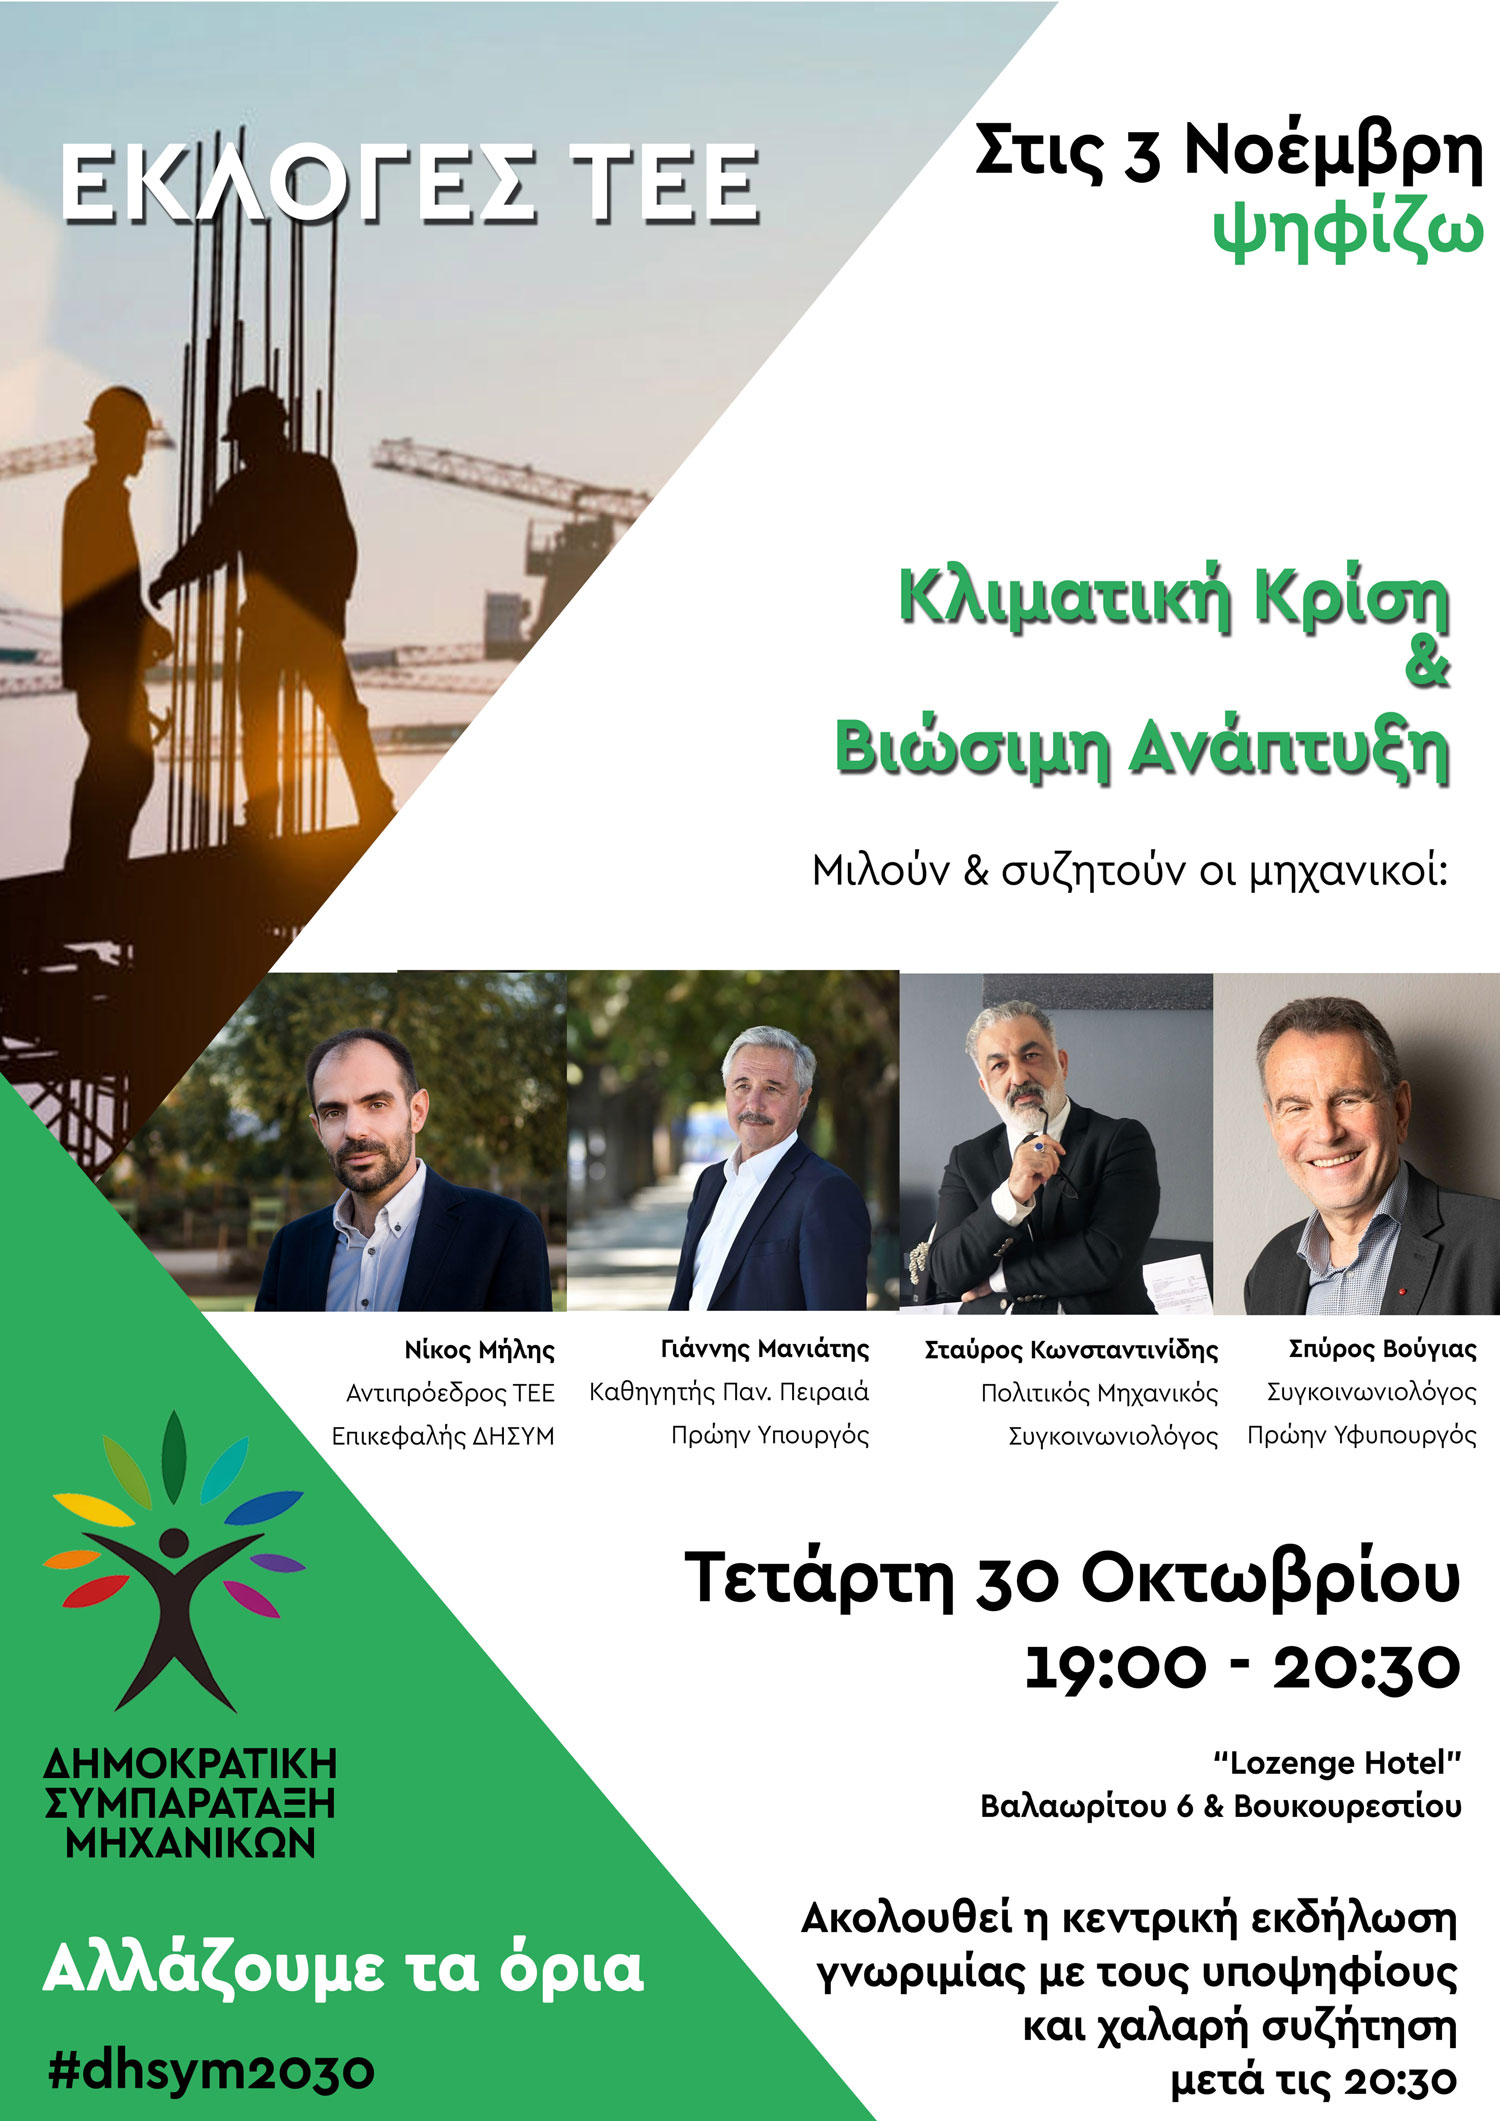 Προεκλογική Εκδήλωση ΔΗΣΥΜ στην Αθήνα, 30 Οκτωβρίου 2019